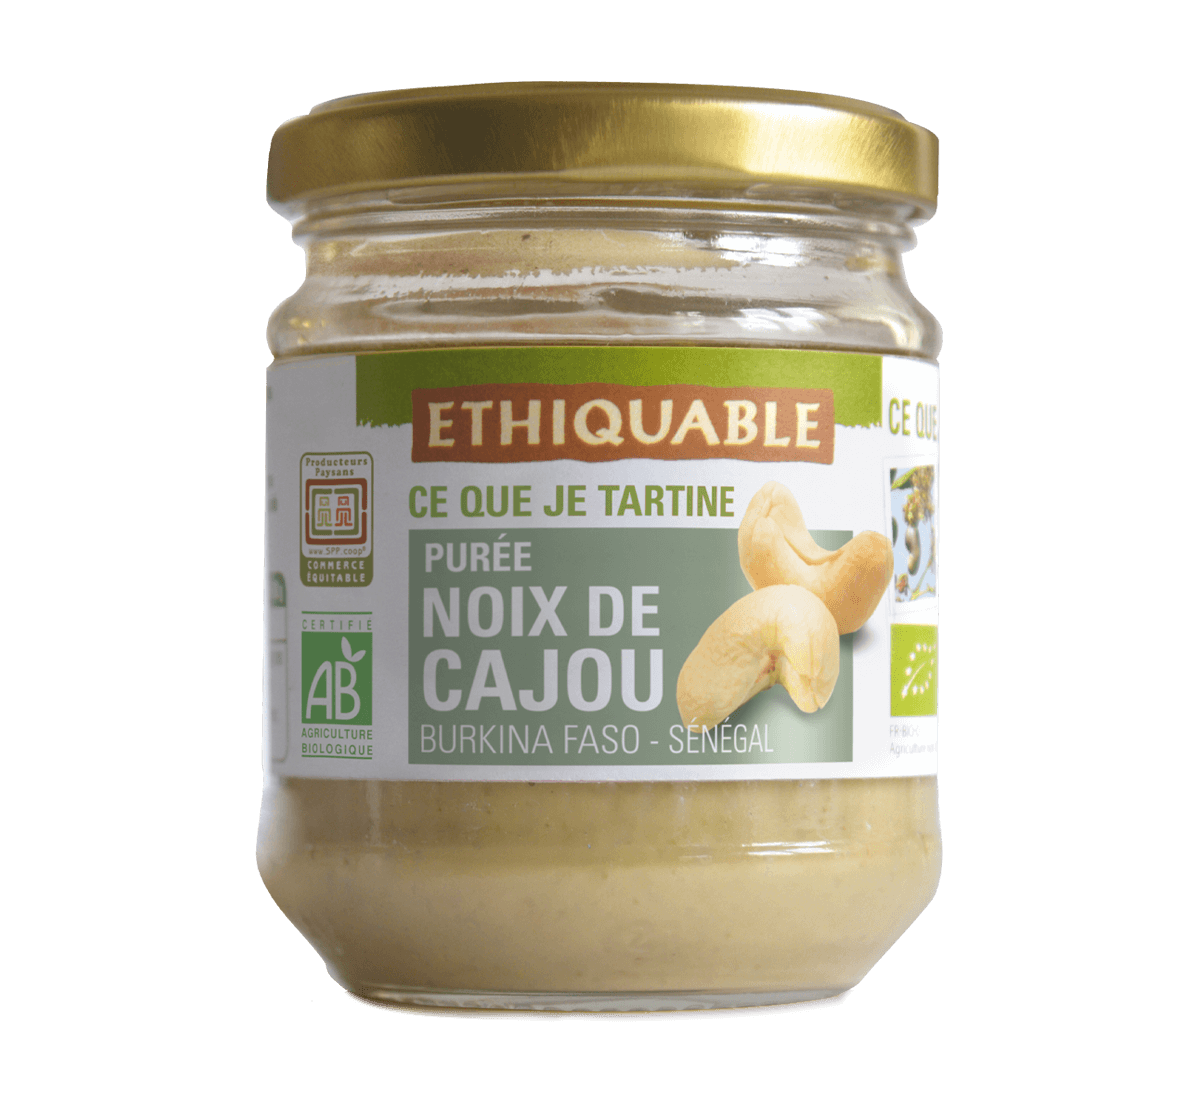 Ethiquable - purée de noix de cajou anacarde bio issue du commerce équitable au Burkina Faso et au Sénégal